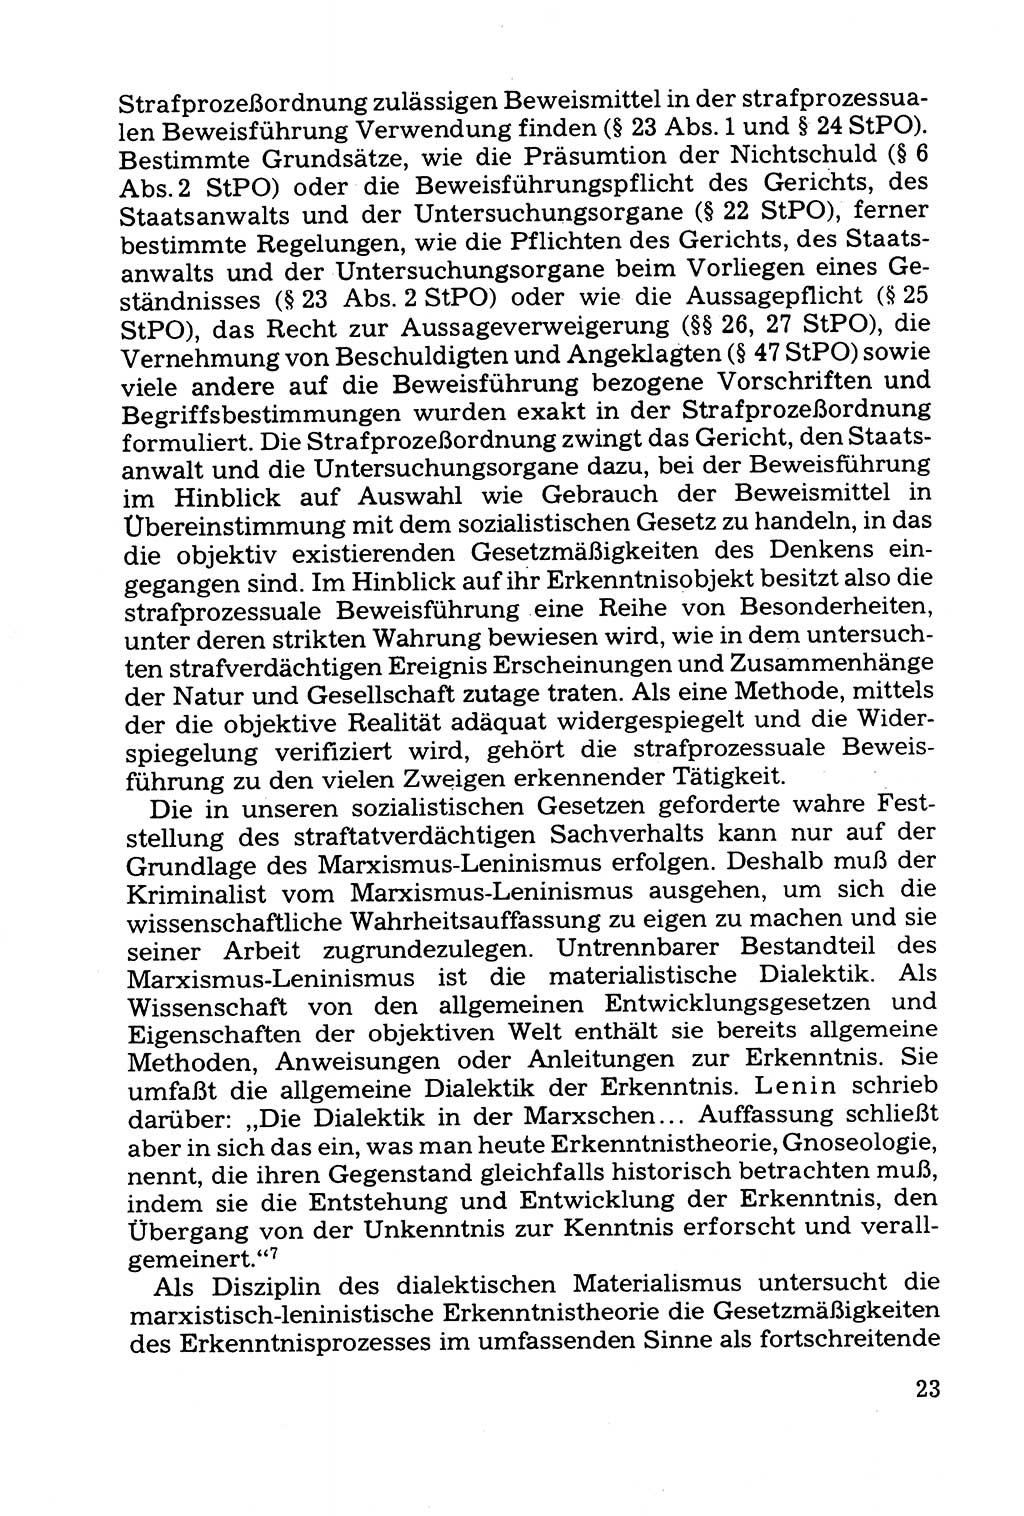 Grundfragen der Beweisführung im Ermittlungsverfahren [Deutsche Demokratische Republik (DDR)] 1980, Seite 23 (Bws.-Fhrg. EV DDR 1980, S. 23)